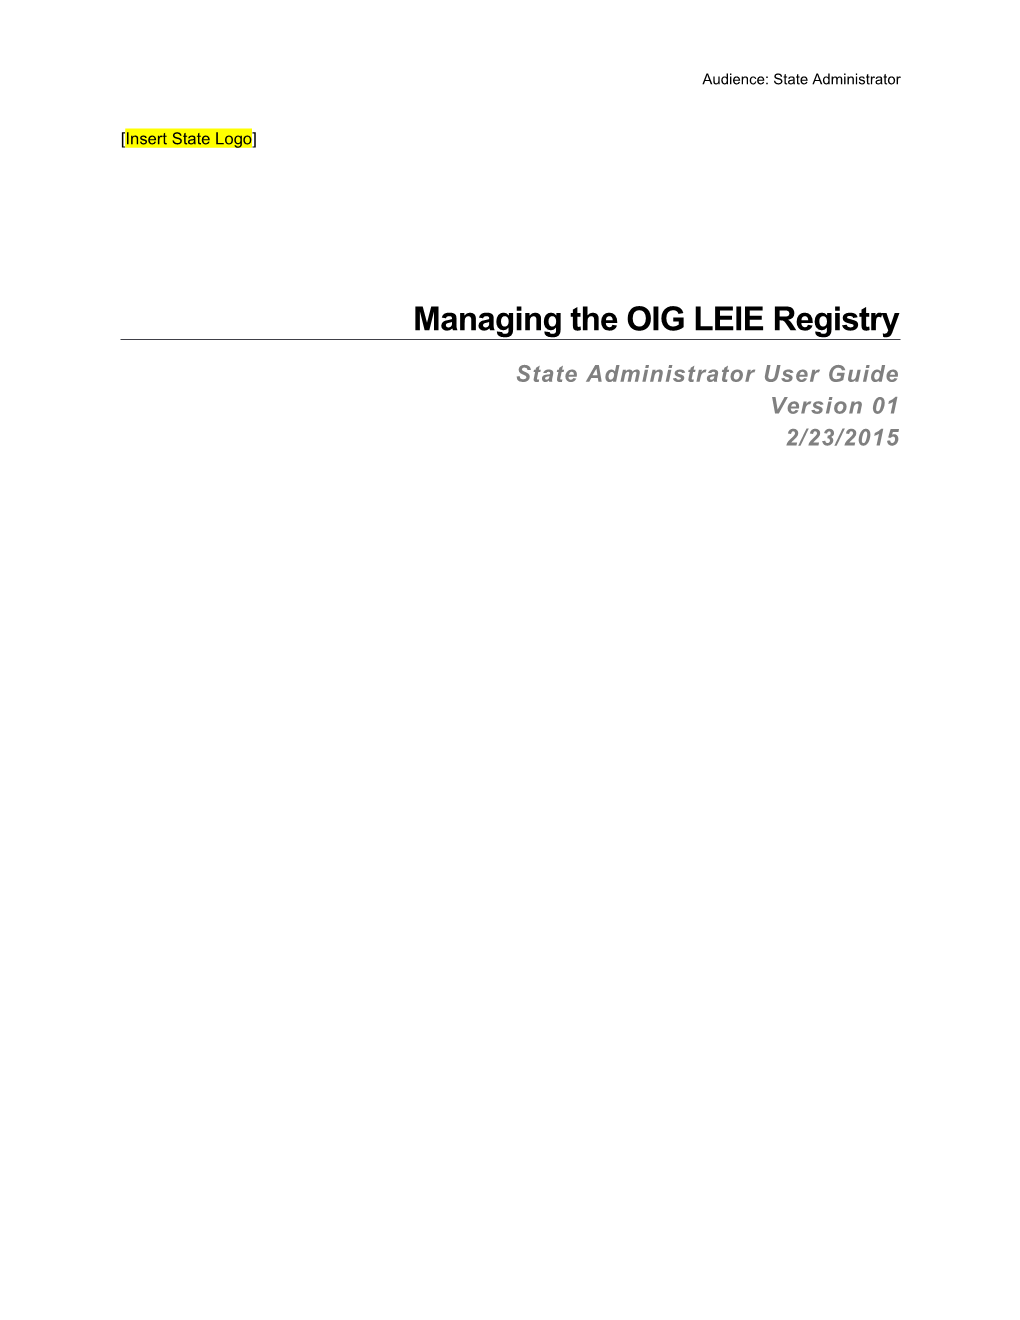 Managing the OIG LEIE Registry